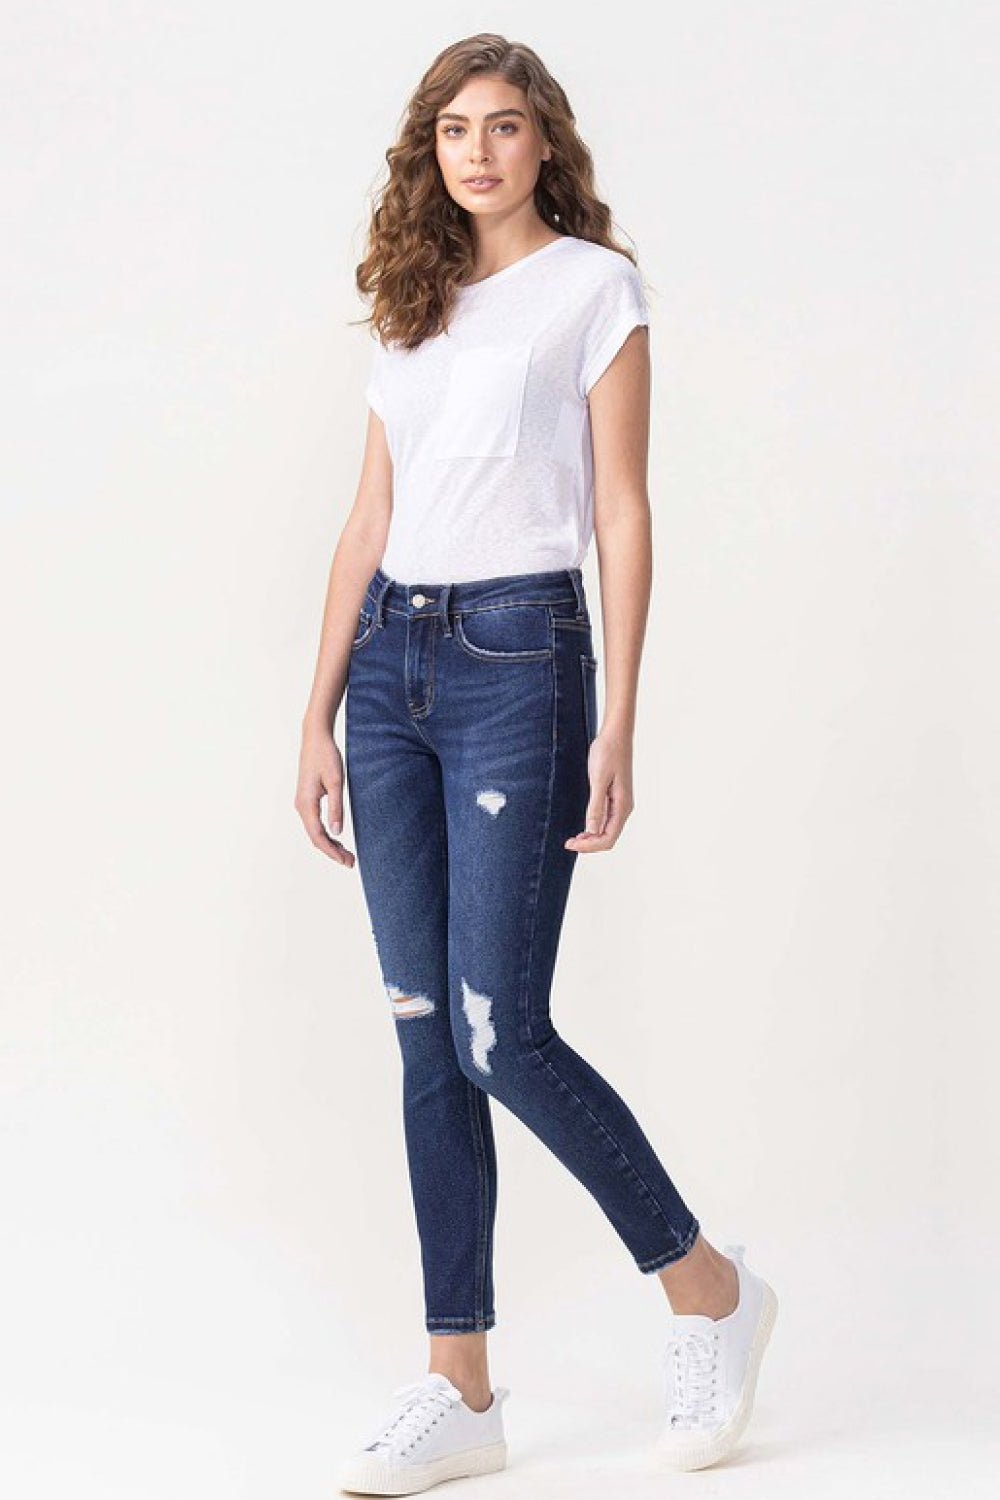 Lovervet by VERVET Full Size Chelsea Midrise Crop Skinny Jeans